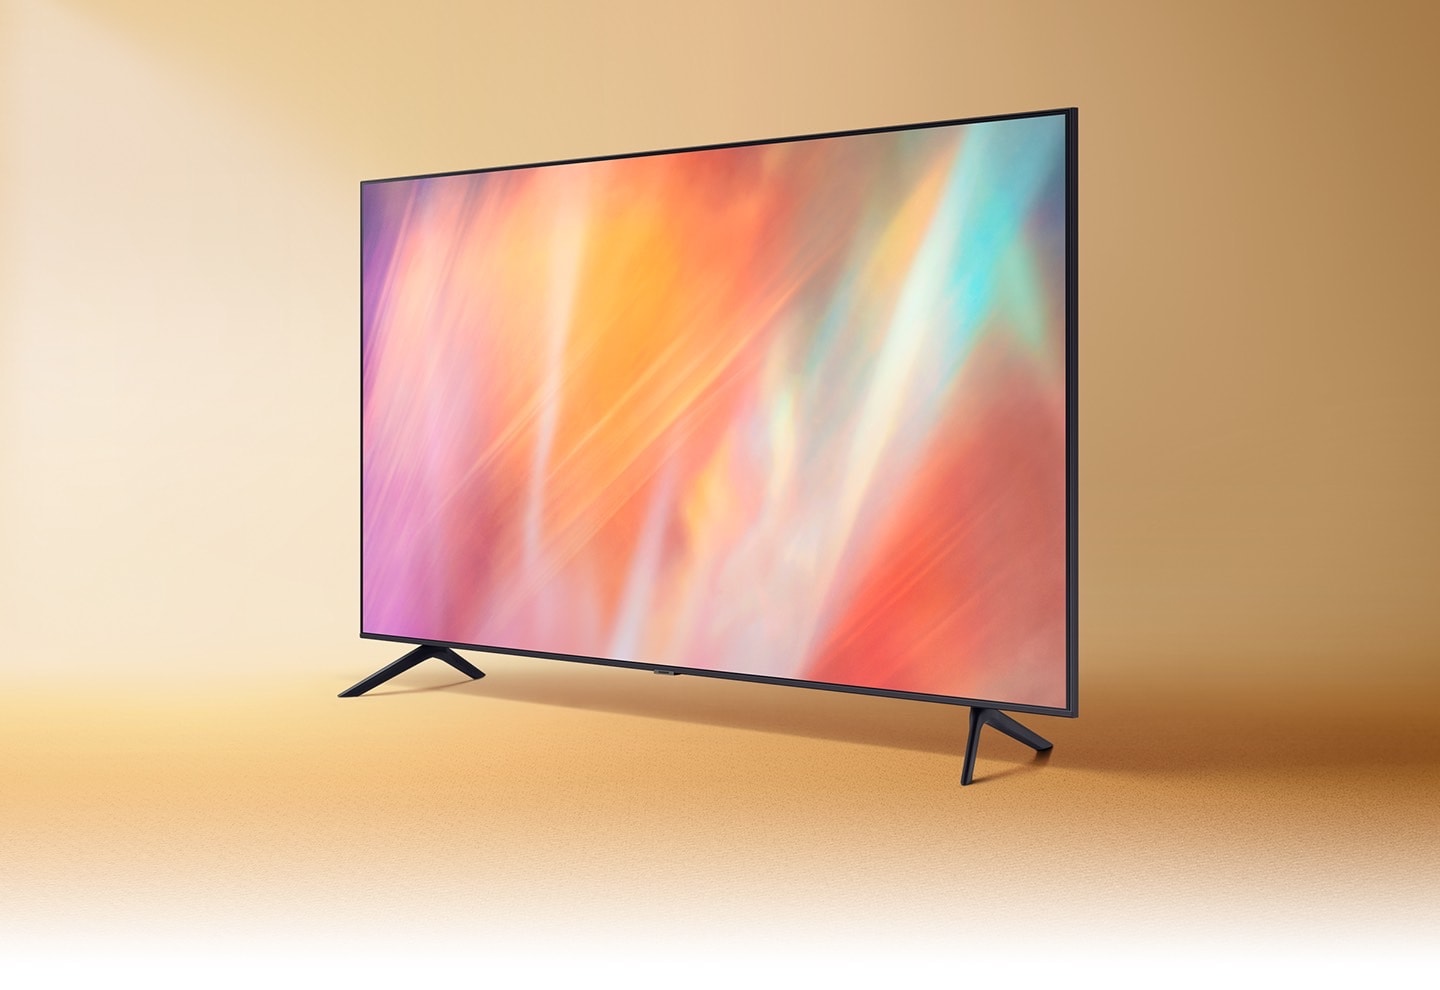 El TV Samsung AU7000 muestra gráficos de colores mezclados que destacan un vívido color de cristal.